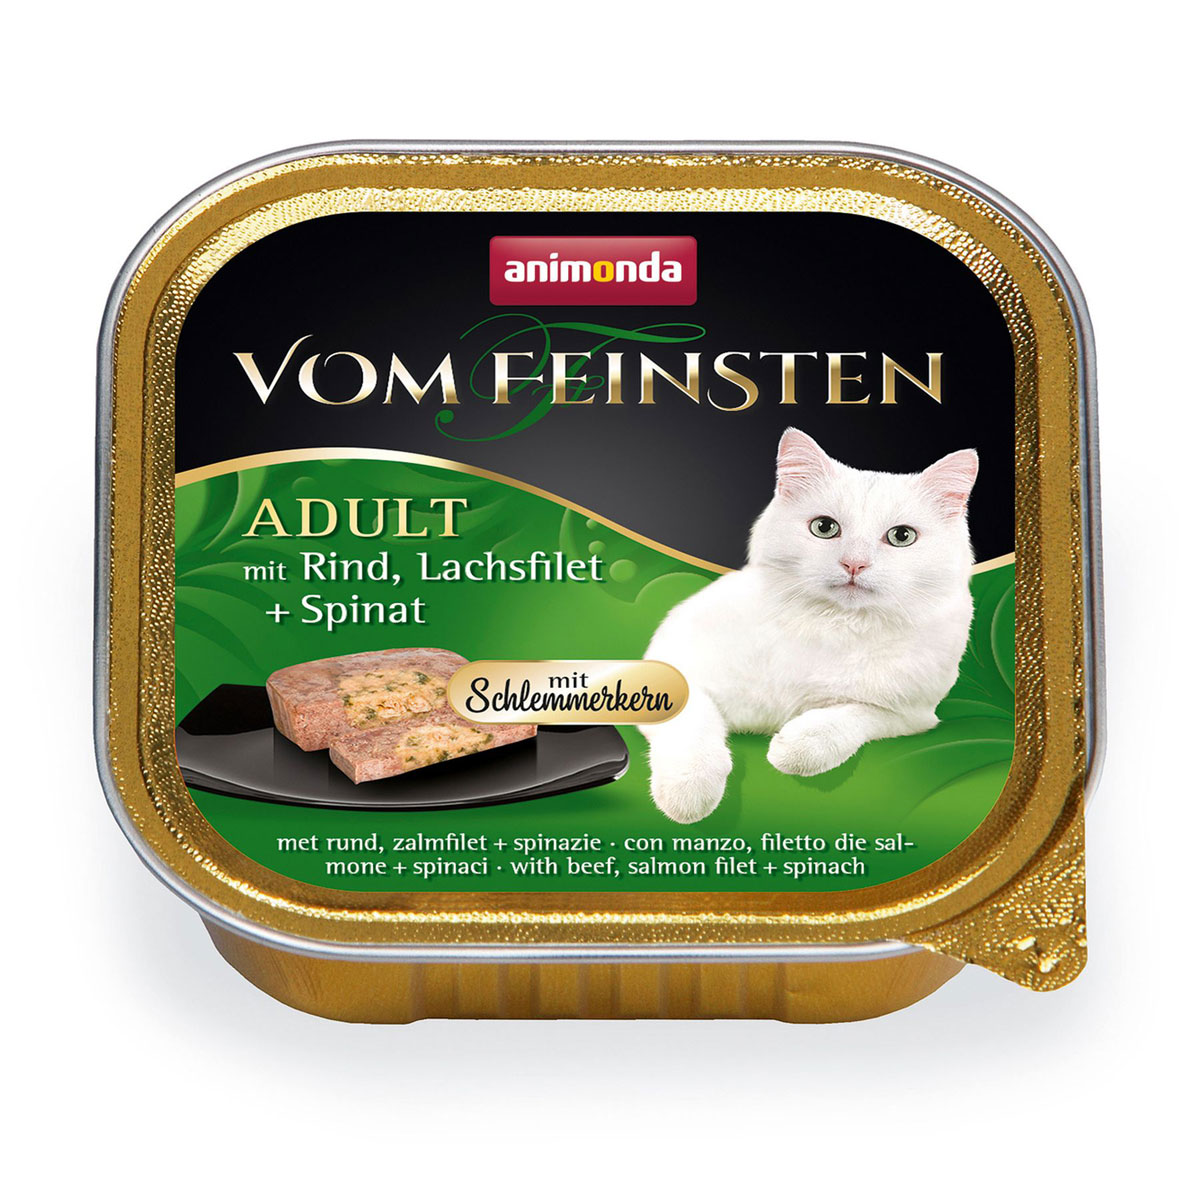 Cat Schlemmerkern, Rind, Lachs, 100g